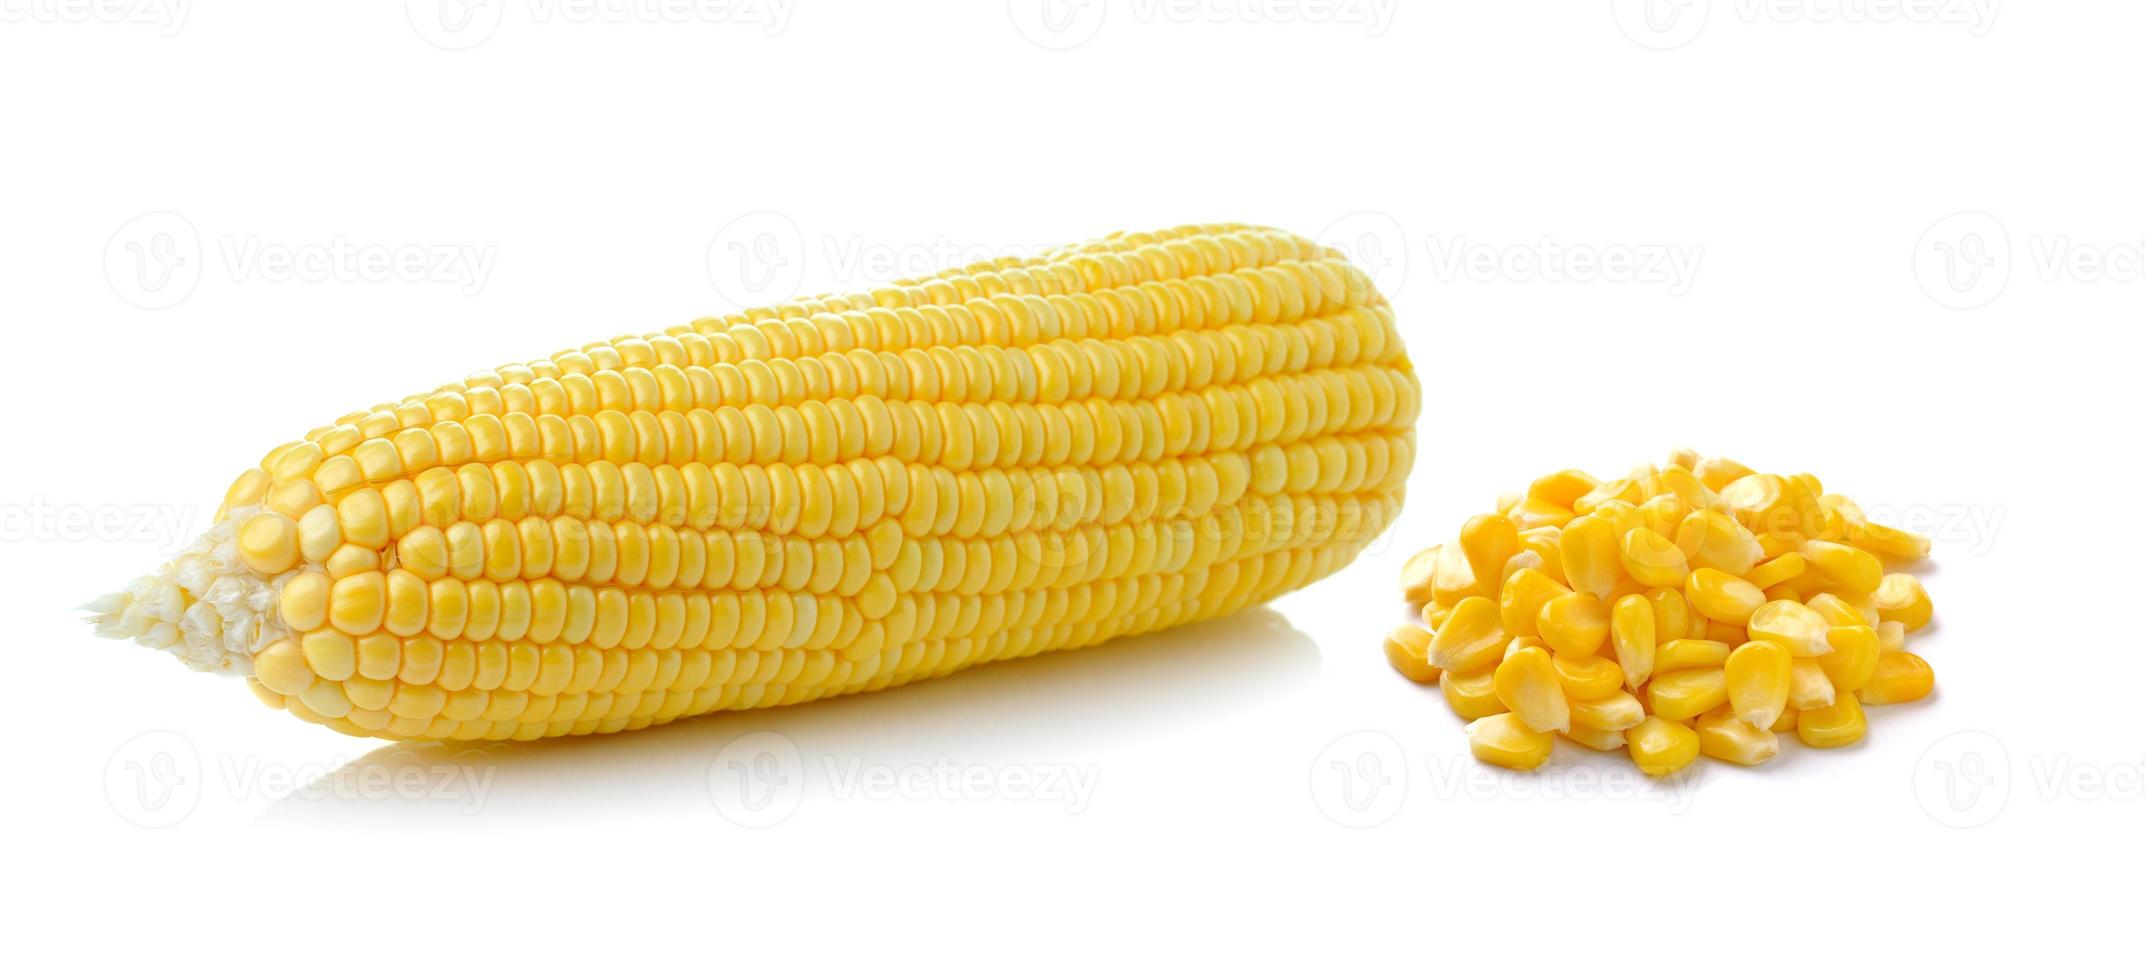 maïs geïsoleerd op een witte achtergrond foto